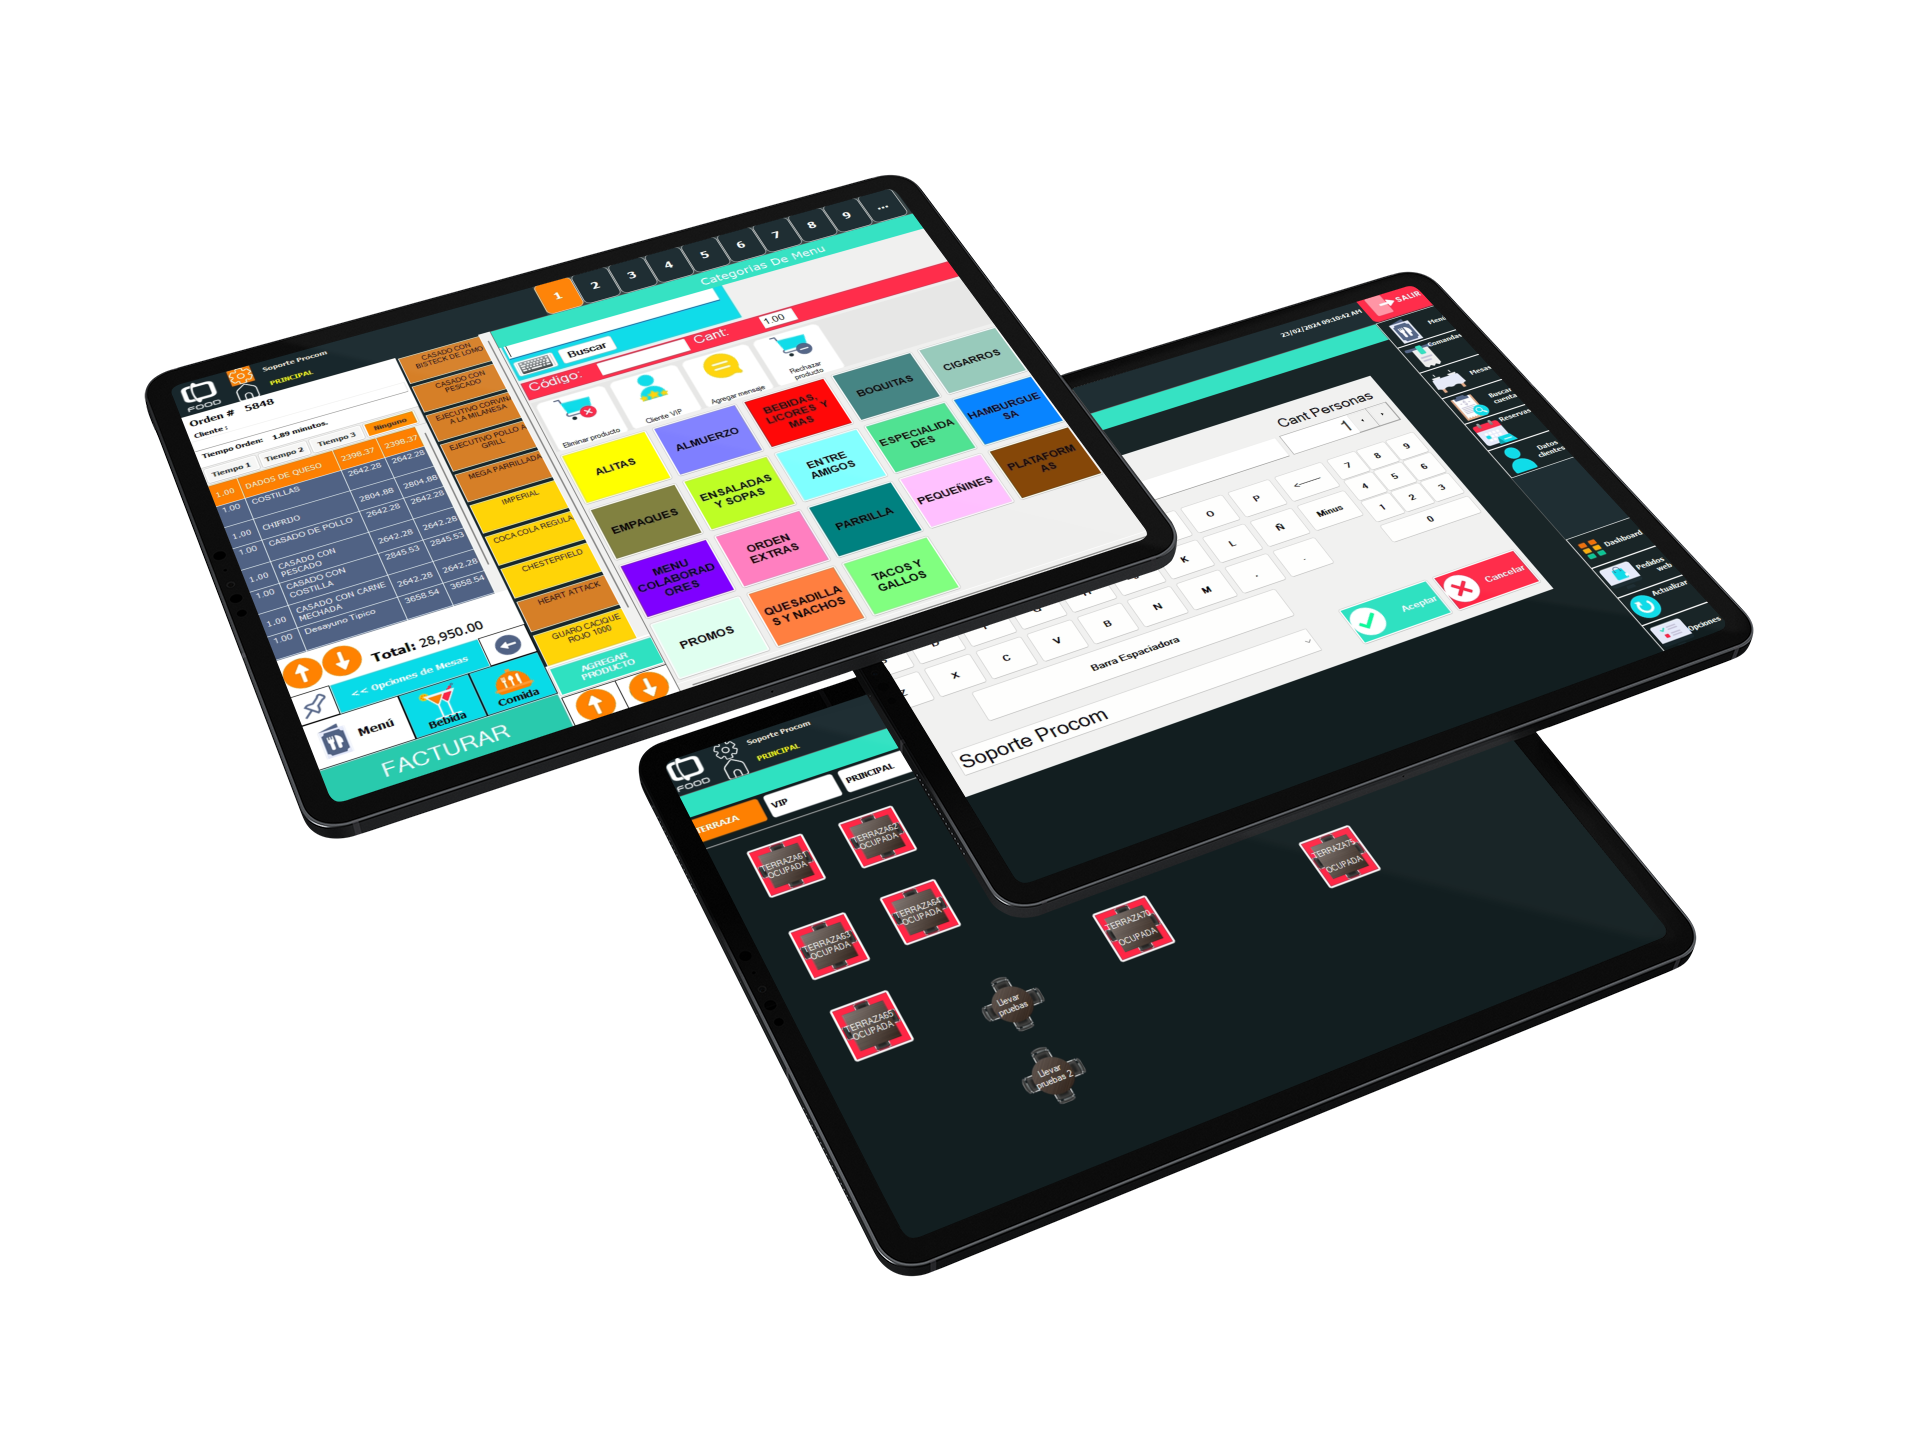 iPads mostrando interfaz grafica de Solaria Food, Control de mesas, pantalla de pago y Opciones de menú